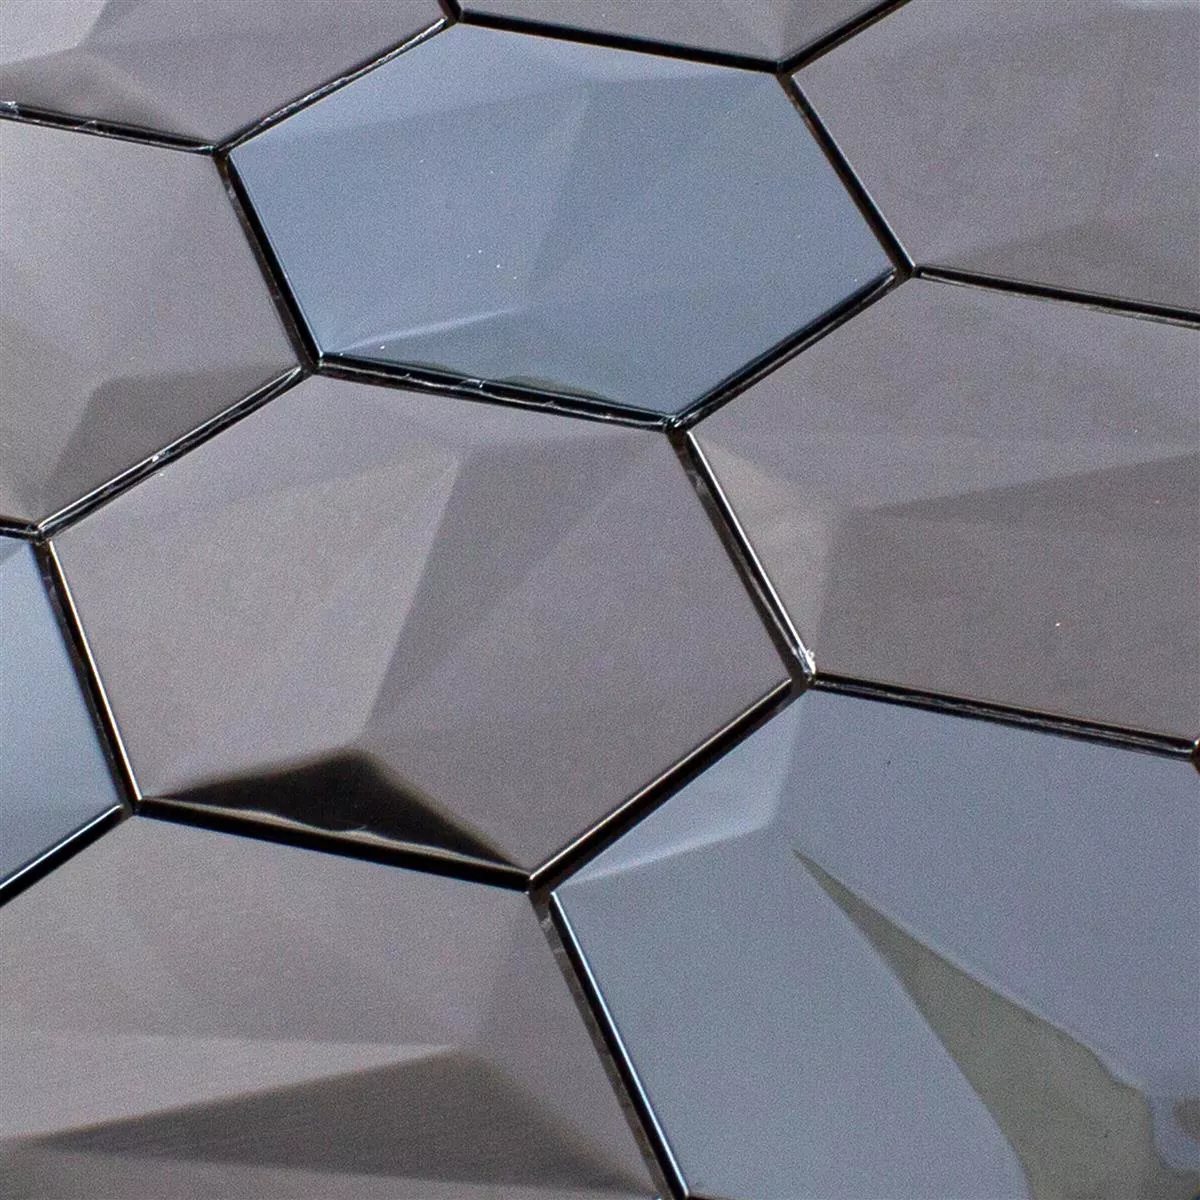 Muestra Acero Inoxidable Azulejos De Mosaico Durango Hexagonales 3D Marrón